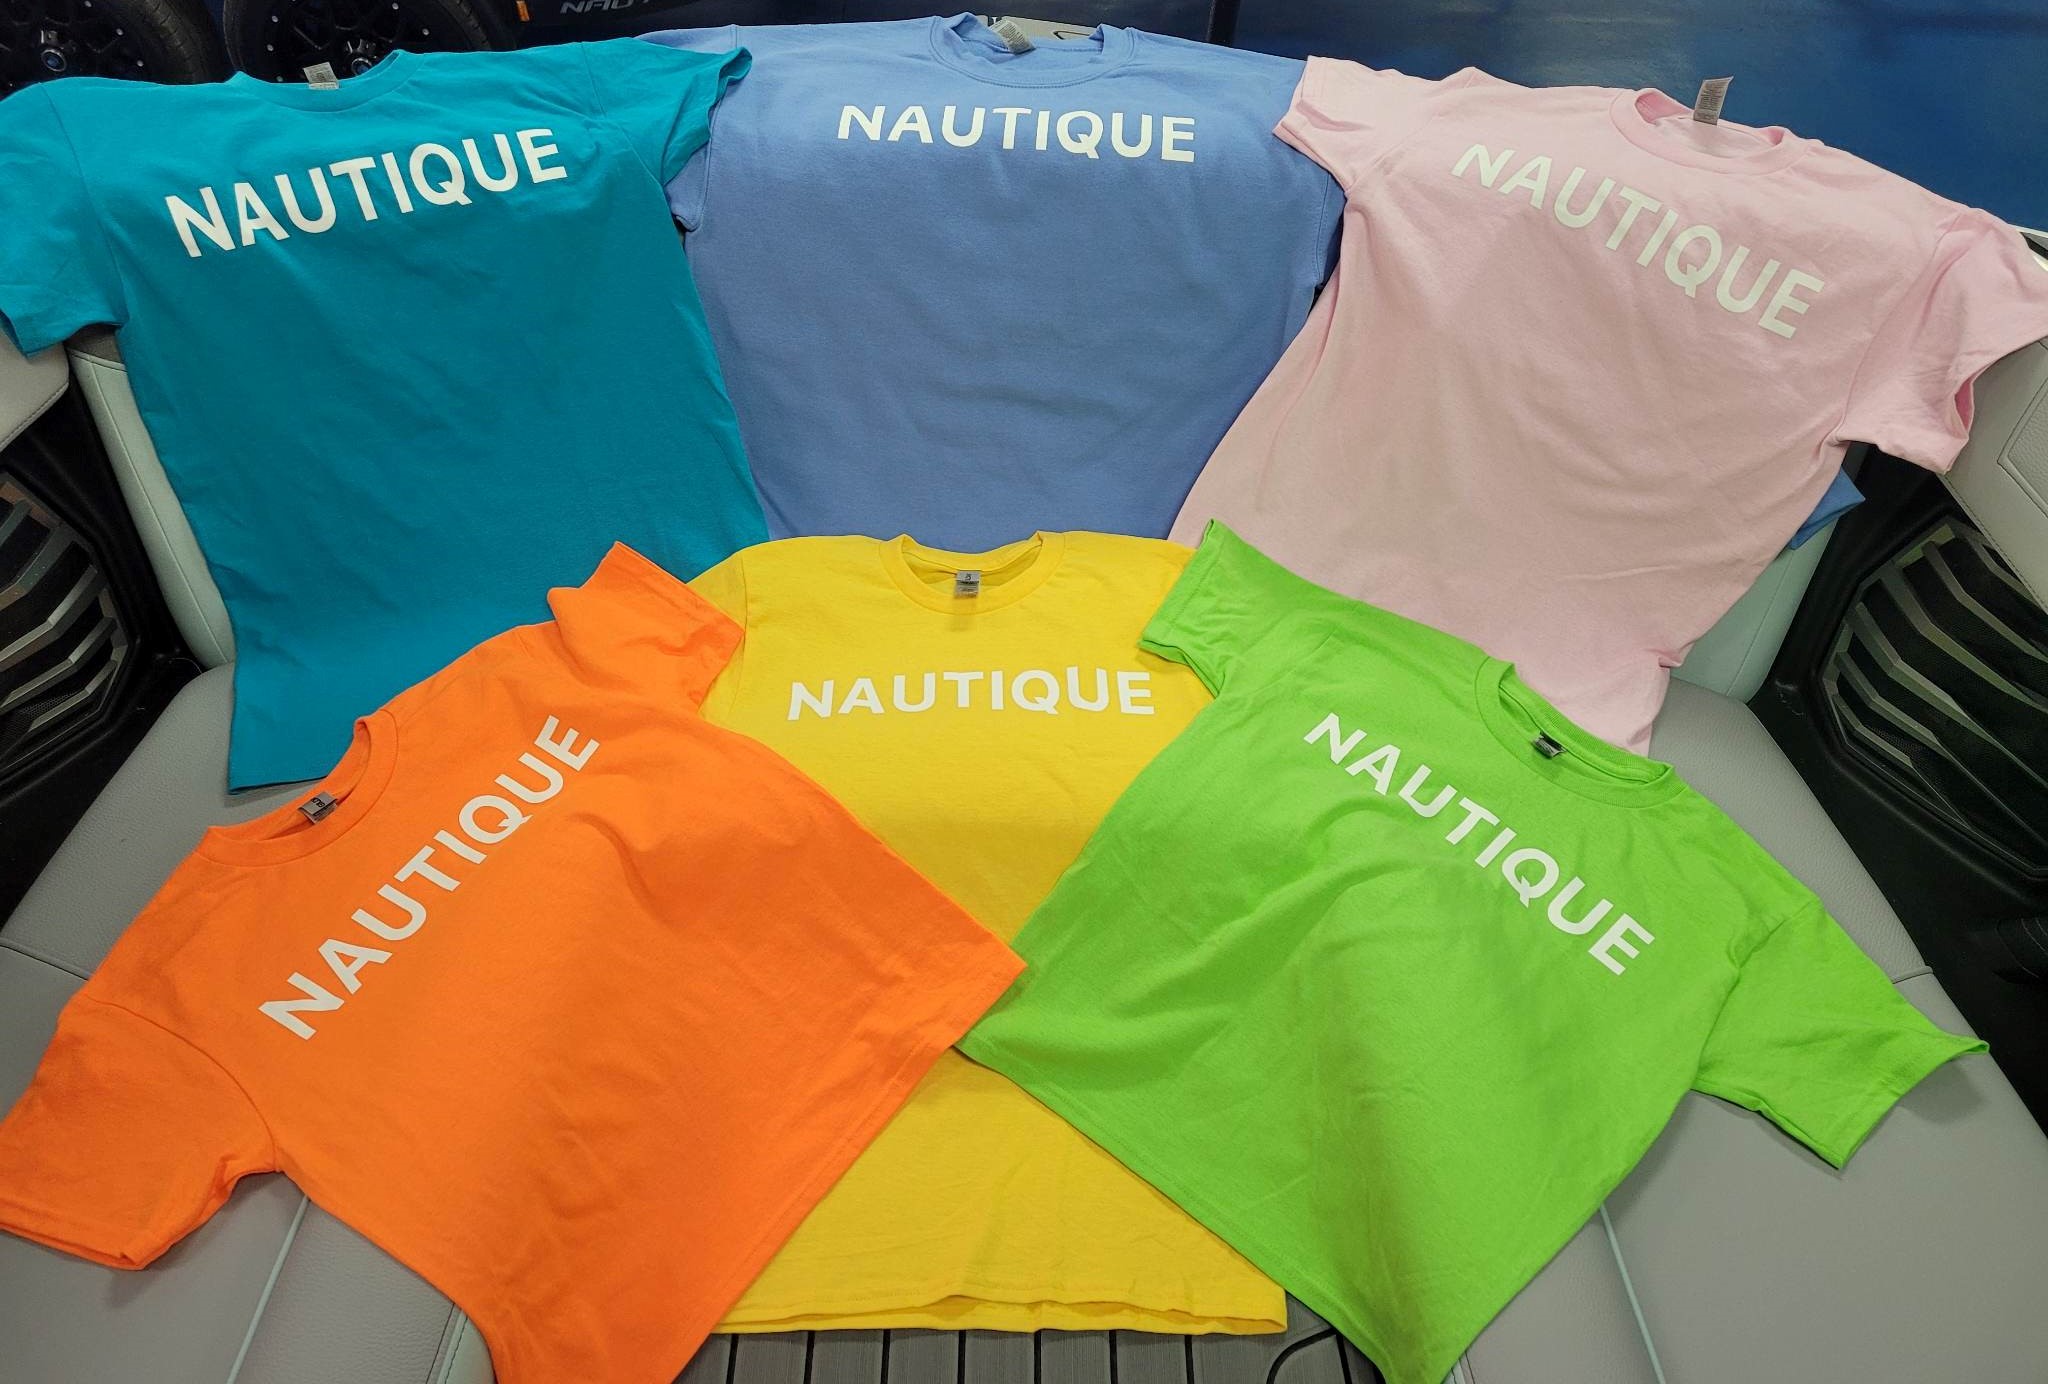 Nautiqueparts.com